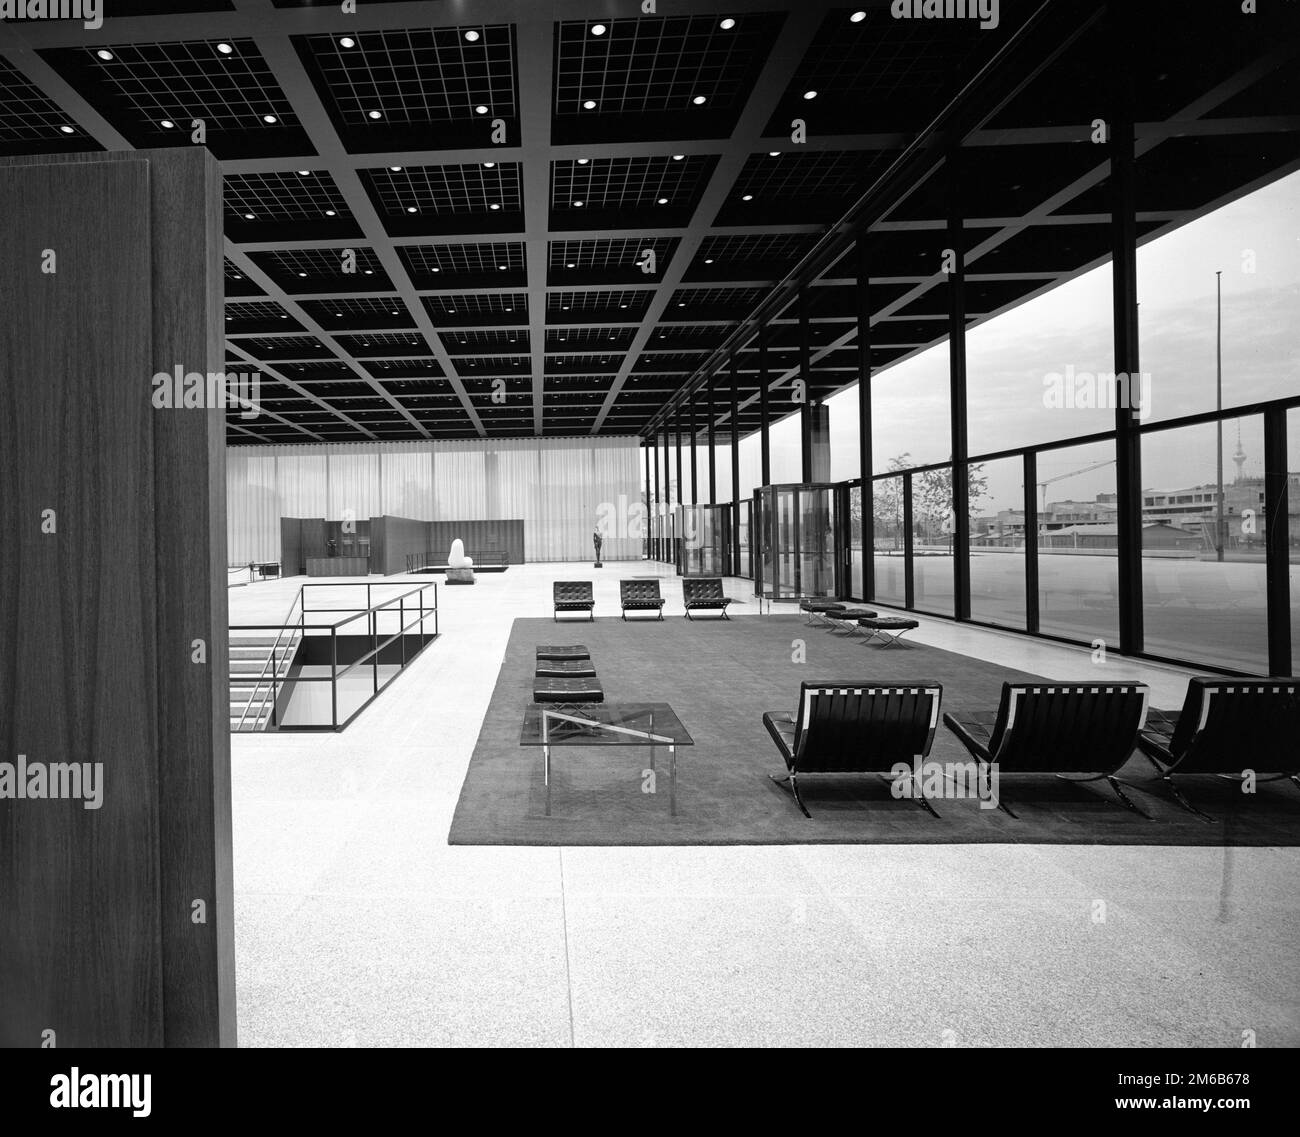 Mies van der Rohe. La Neue Nationalgalerie (Nuova Galleria Nazionale) di Berlino, progettata dall'architetto tedesco / americano, Ludwig Mies van der Rohe (1886-1969), 1968 Foto Stock